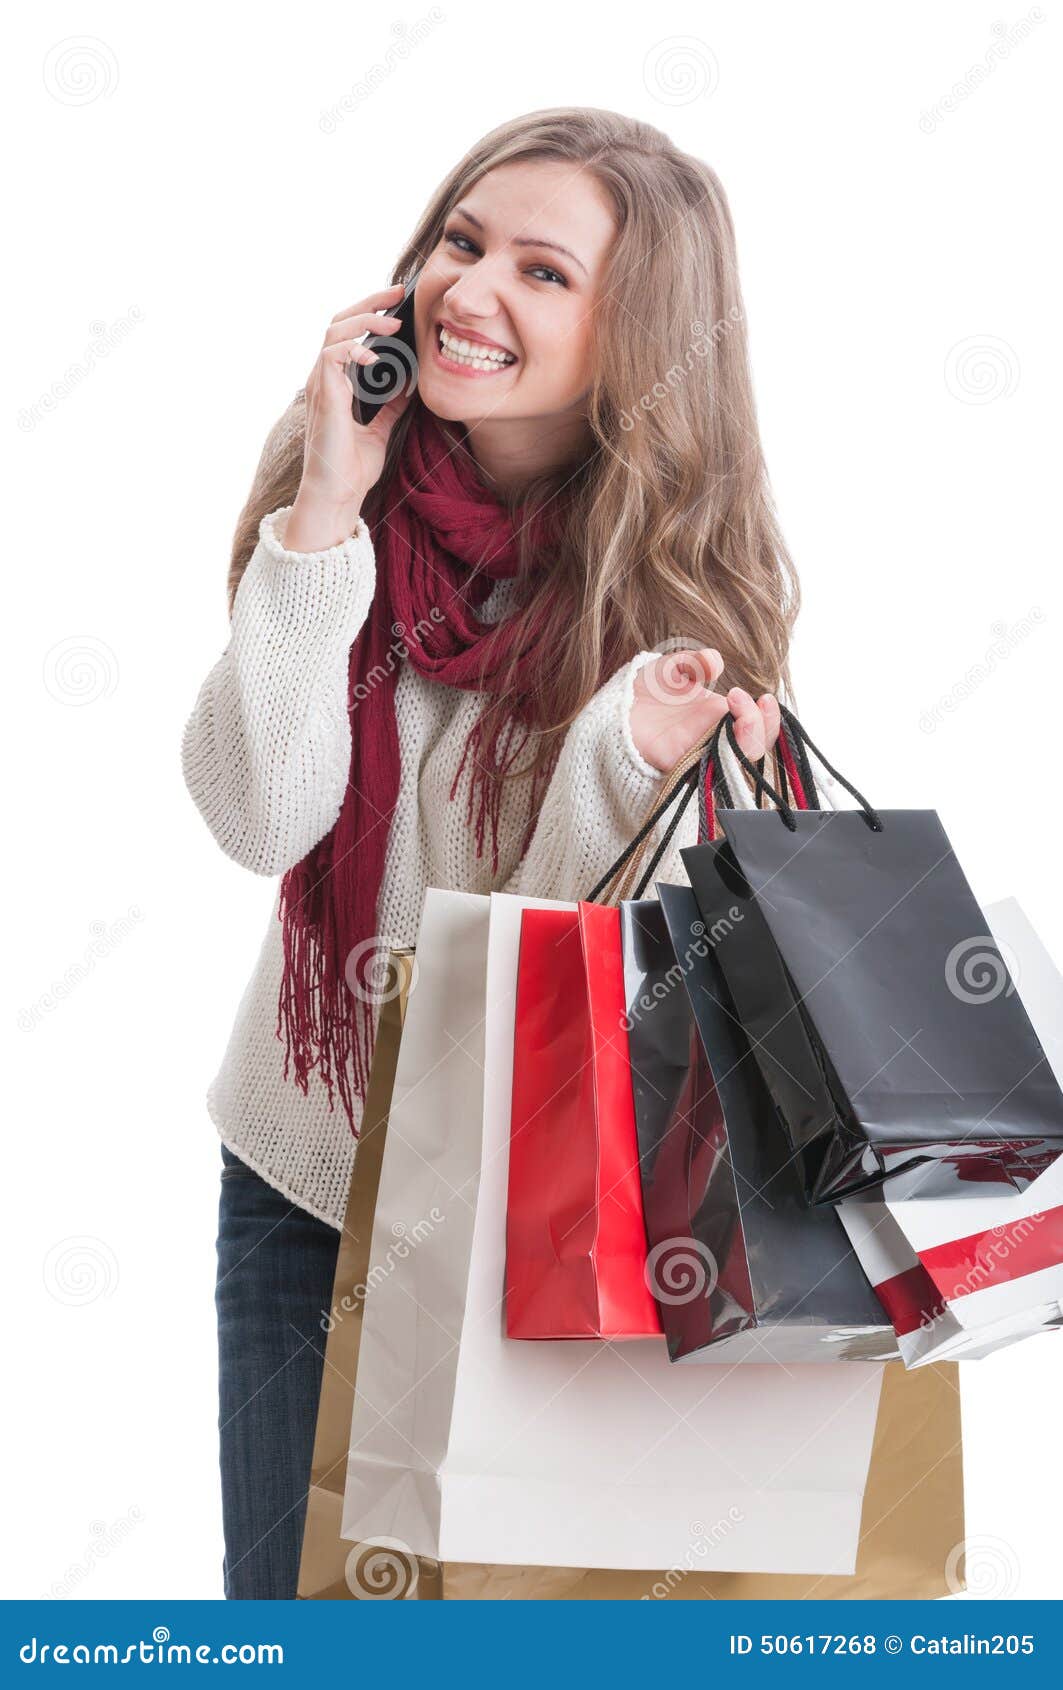 Расскажите про покупки про какие про покупки: Расскажите про покупки. Про какие такие покупки?